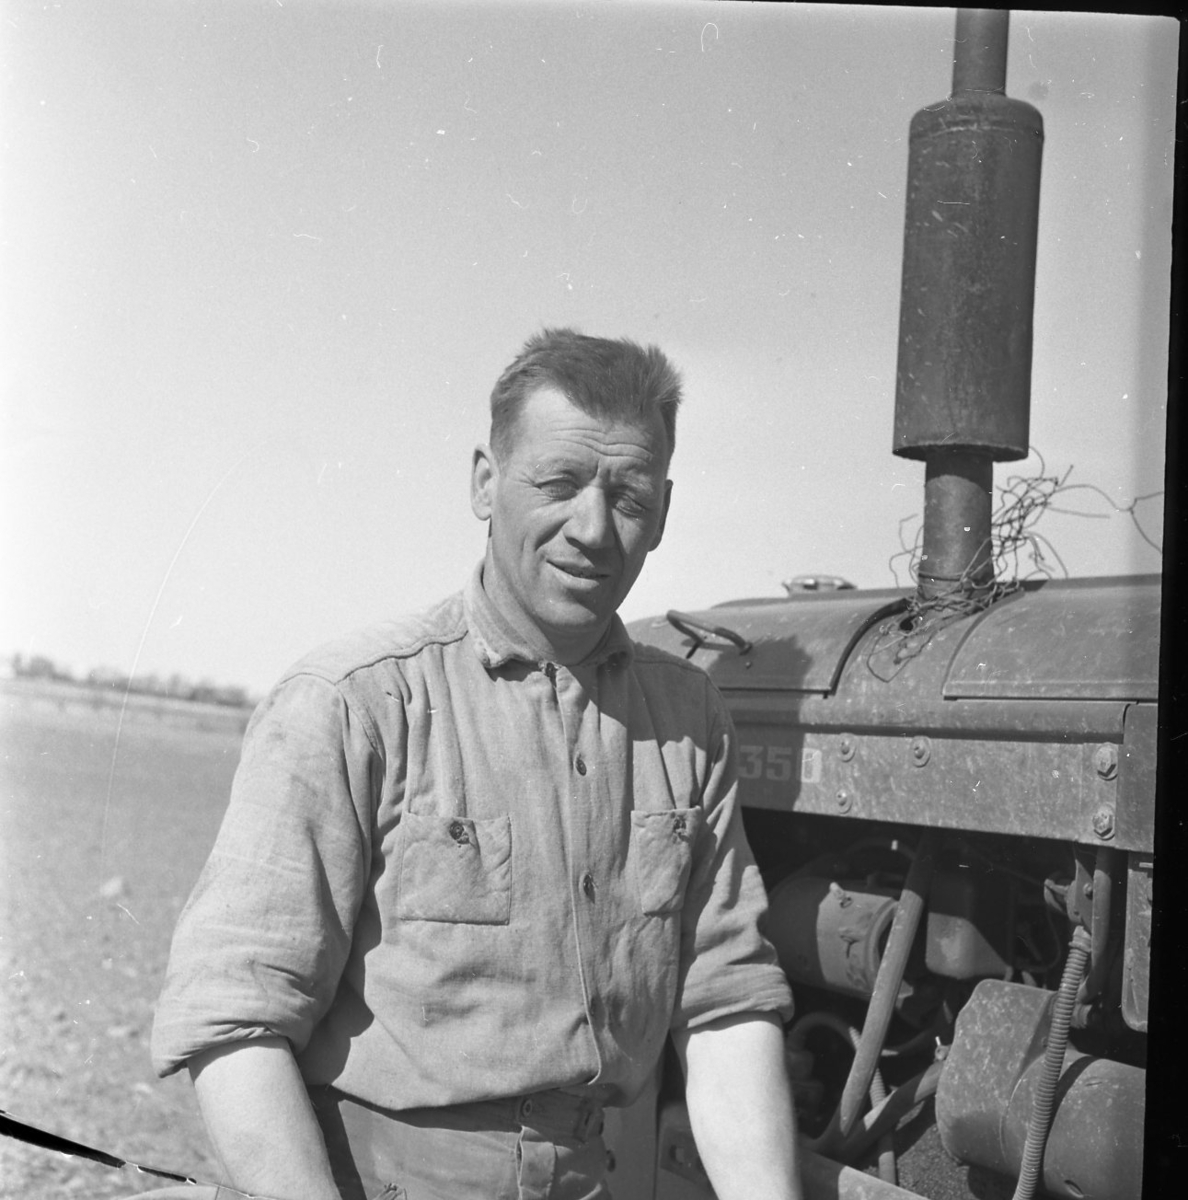 Porträtt av Per-Axel Wenner. Han bär en arbetsskjorta och står lutad mot en traktor.